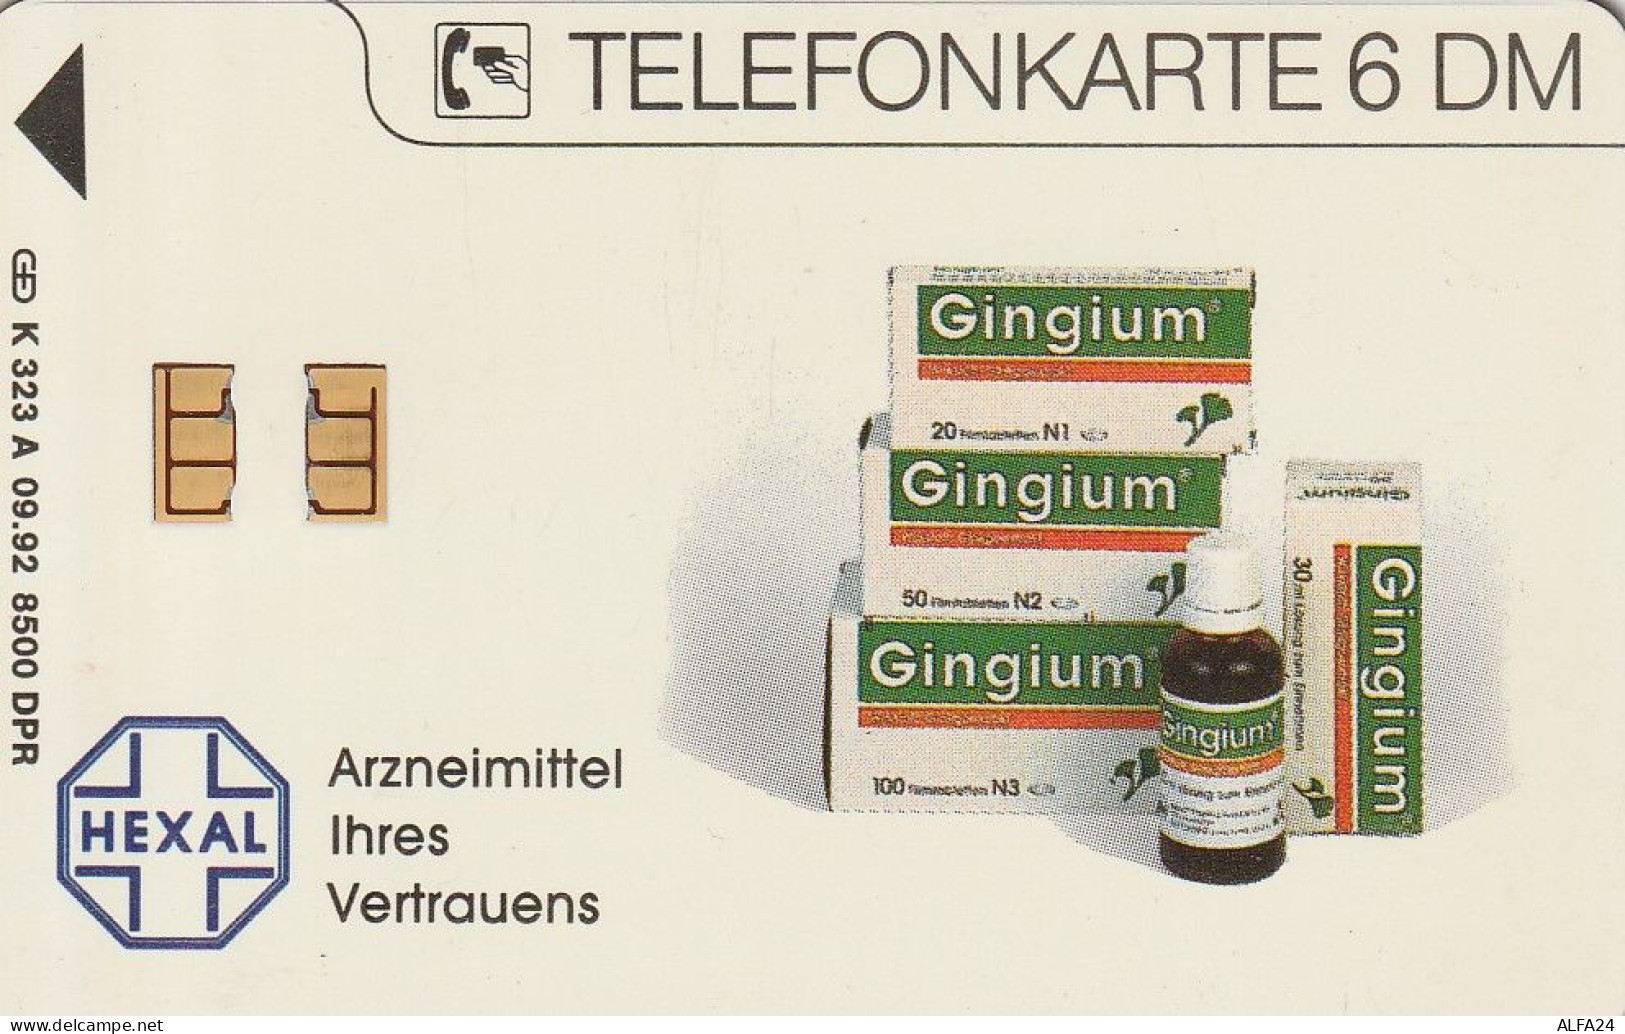 PHONE CARD GERMANIA SERIE A TIR.8500 (E79.41.8 - A + AD-Series : Publicitaires - D. Telekom AG